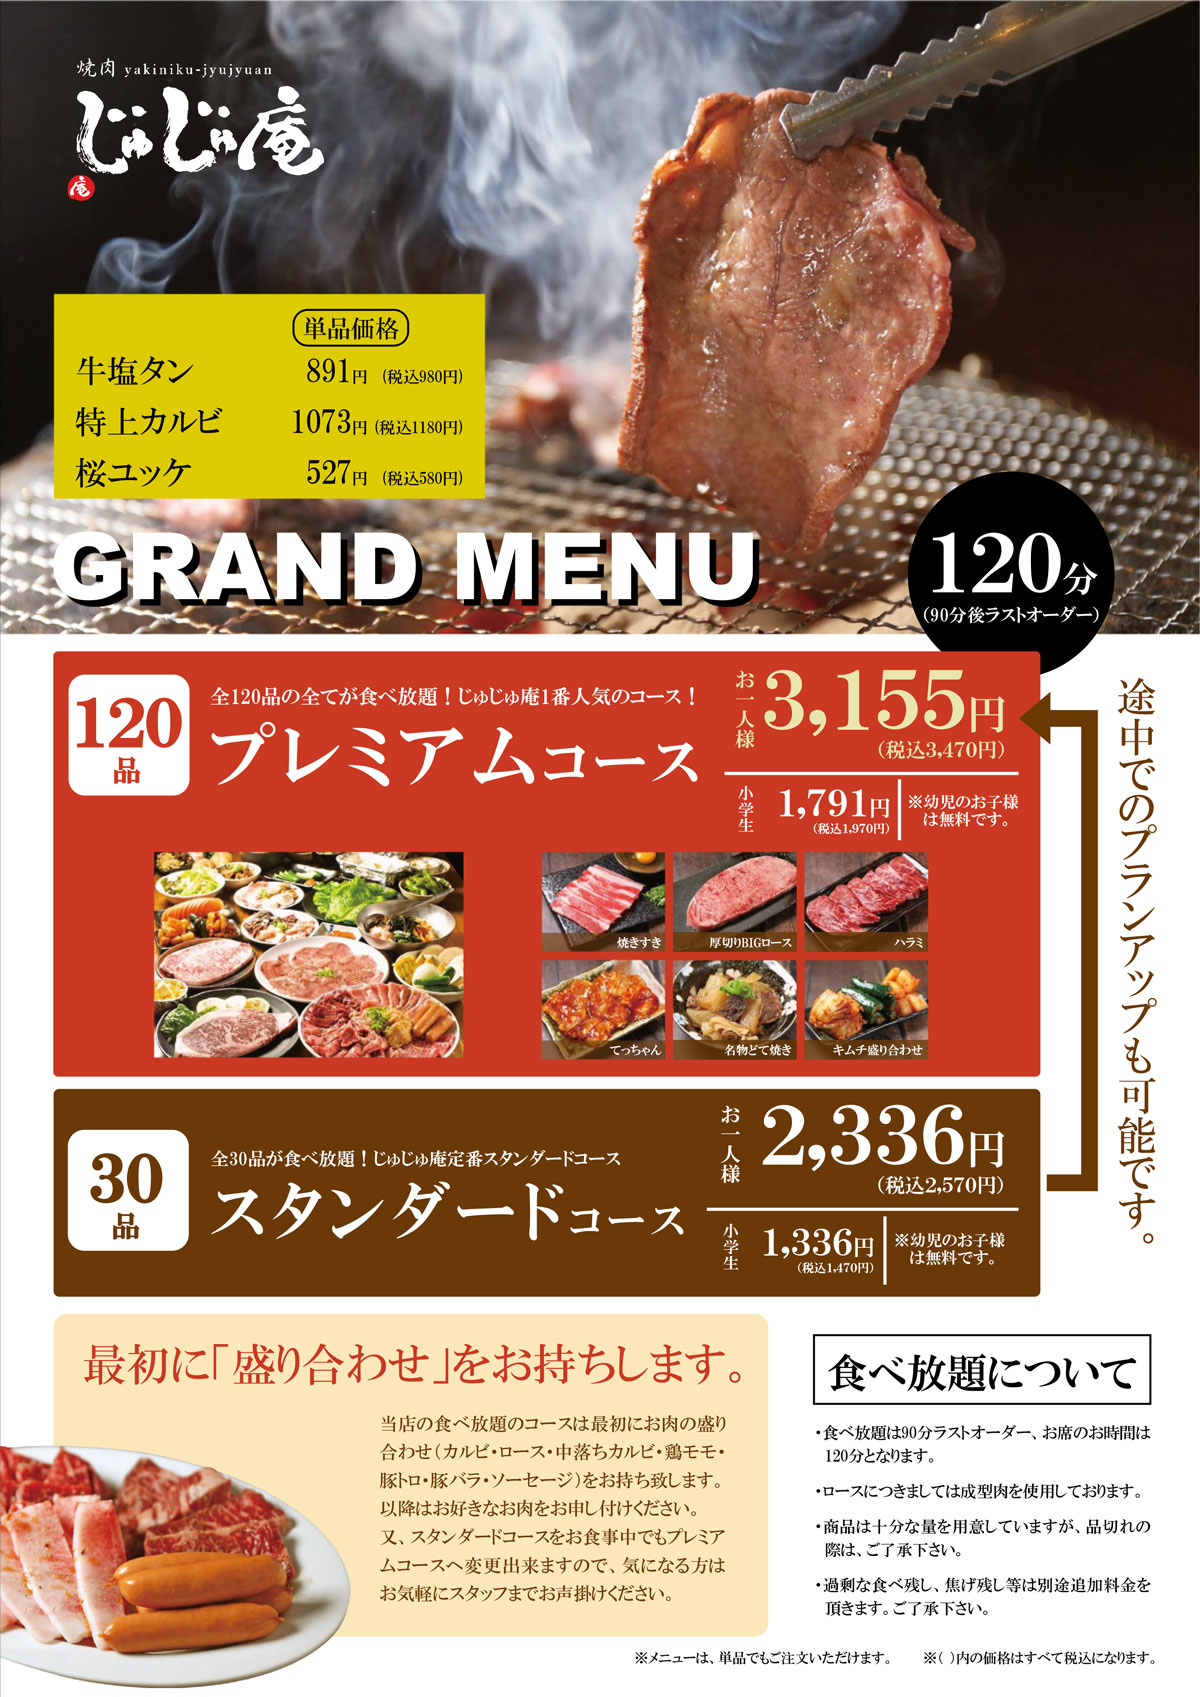 menu03_kyobashi_ibaraki